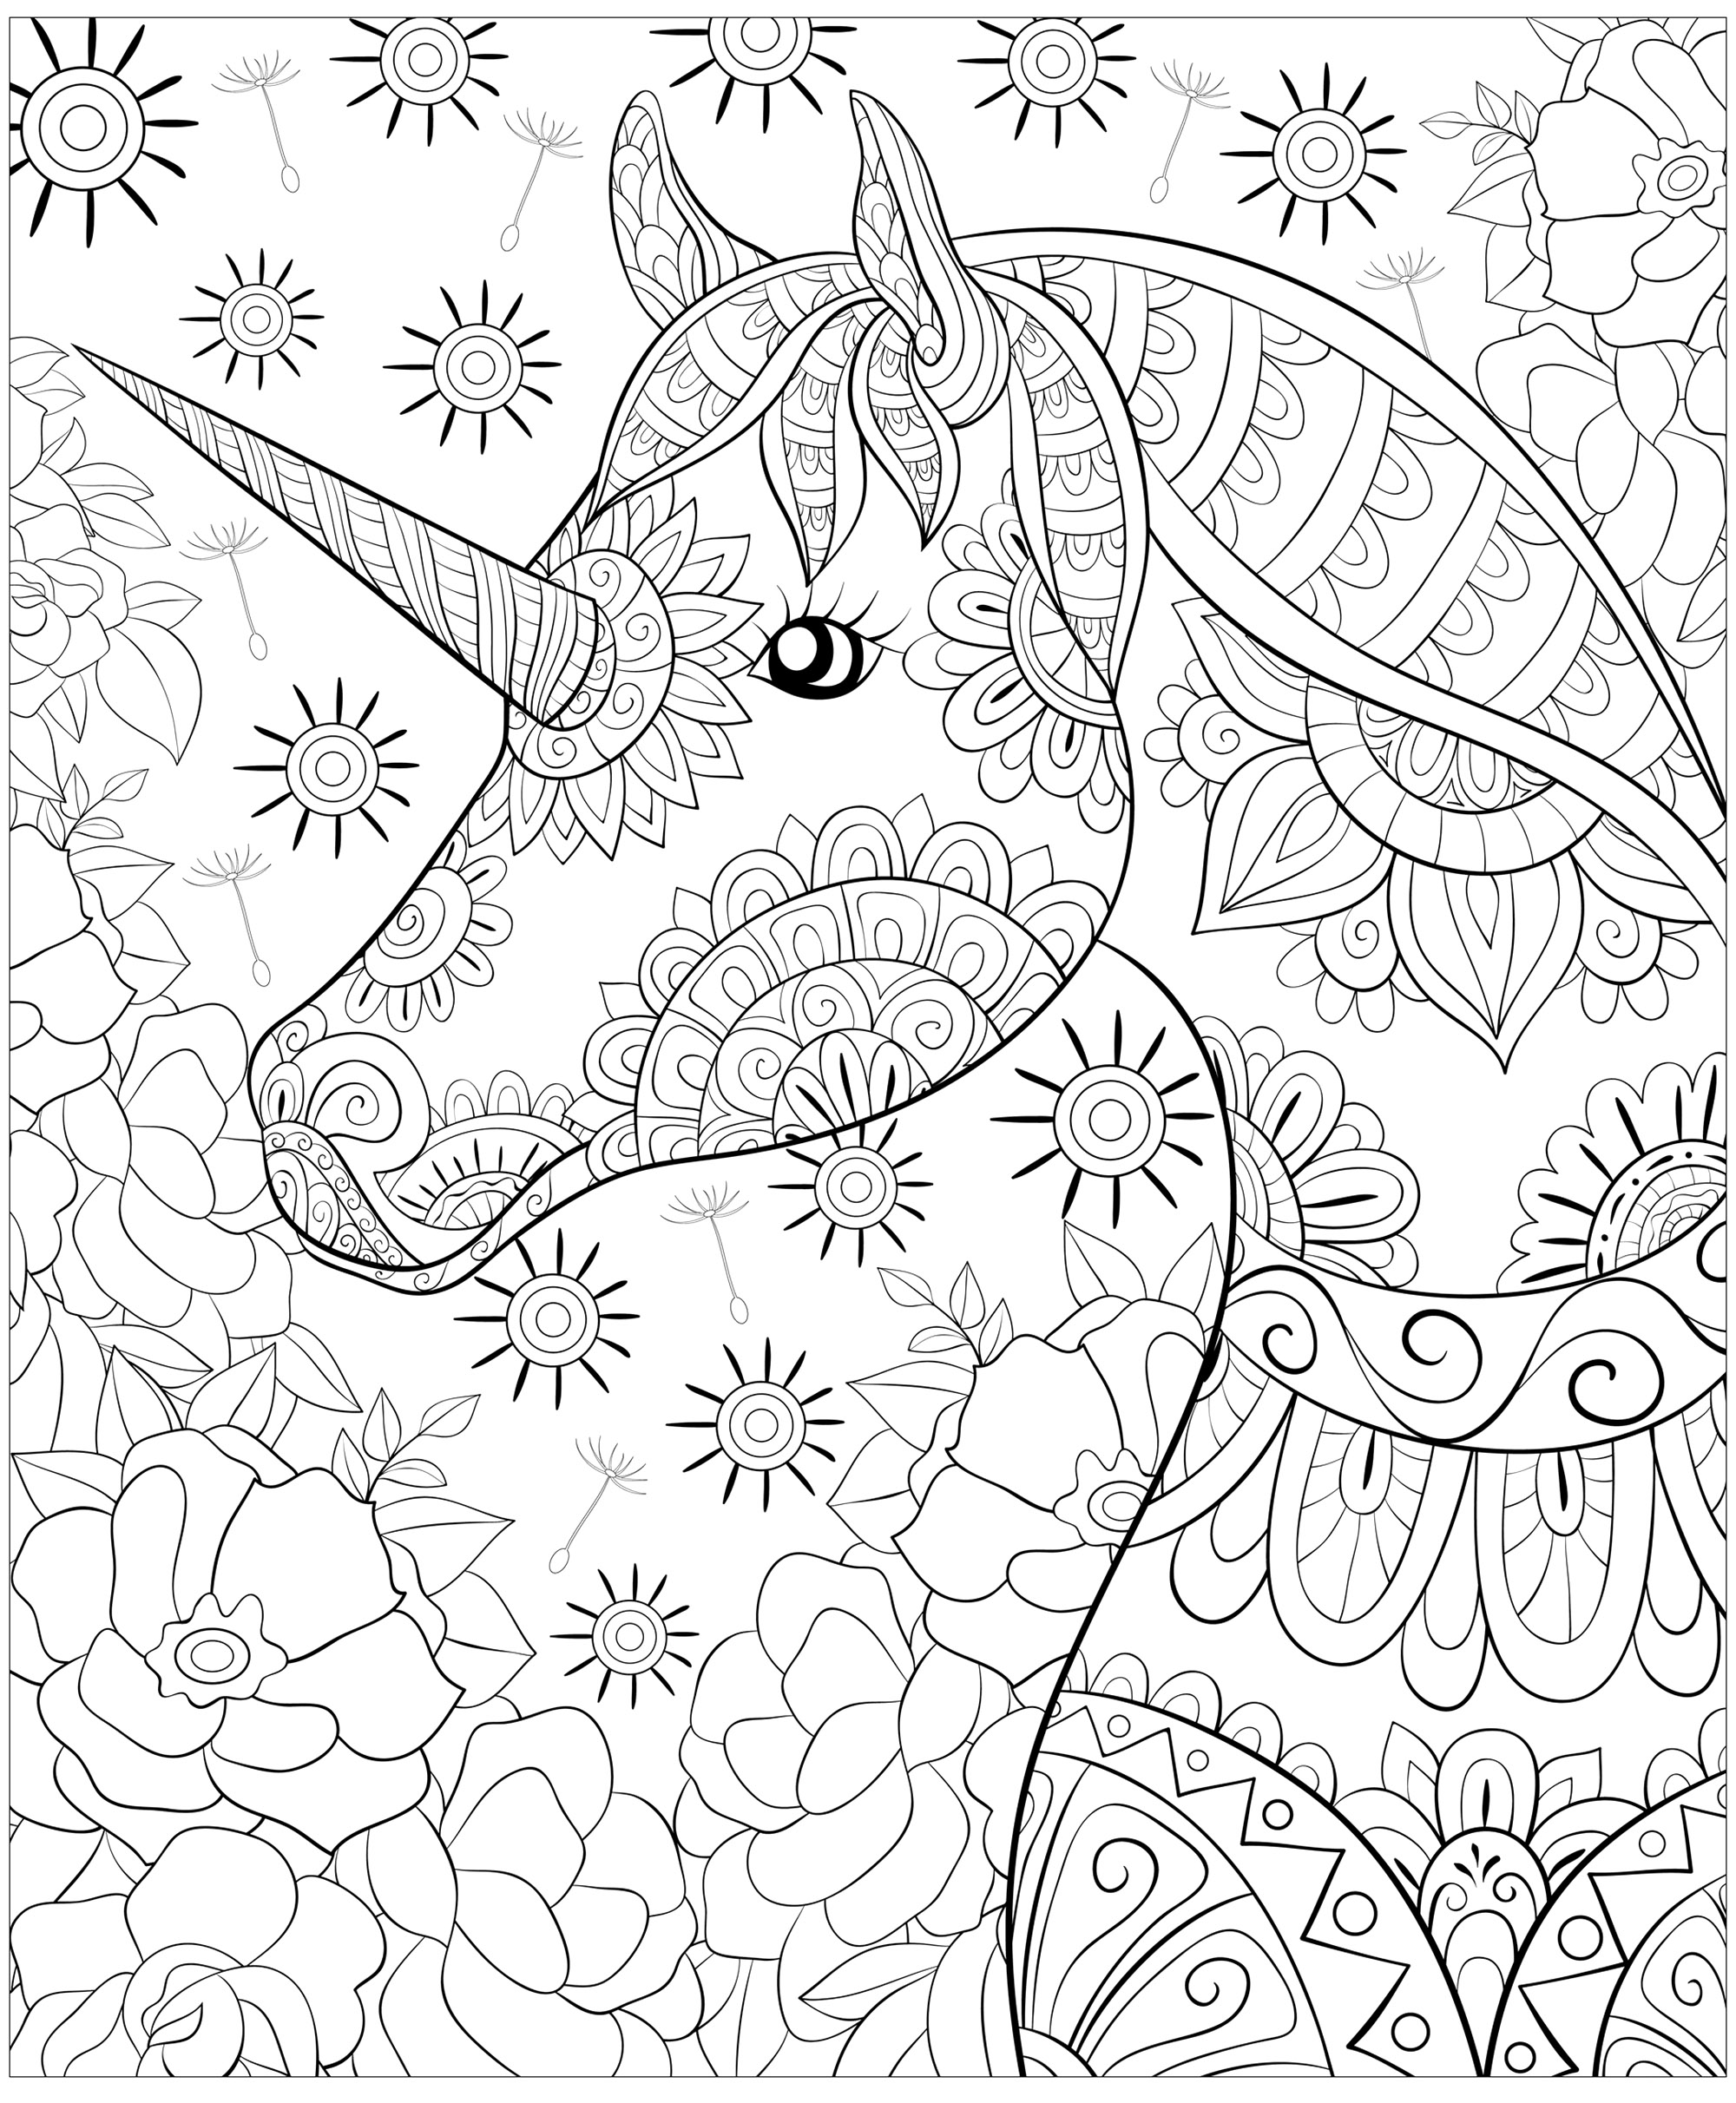 Un simpático unicornio y un fondo floral abstracto. Colorea este precioso unicornio y todas estas flores variadas, Artista : Nonuzza   Origen : 123rf